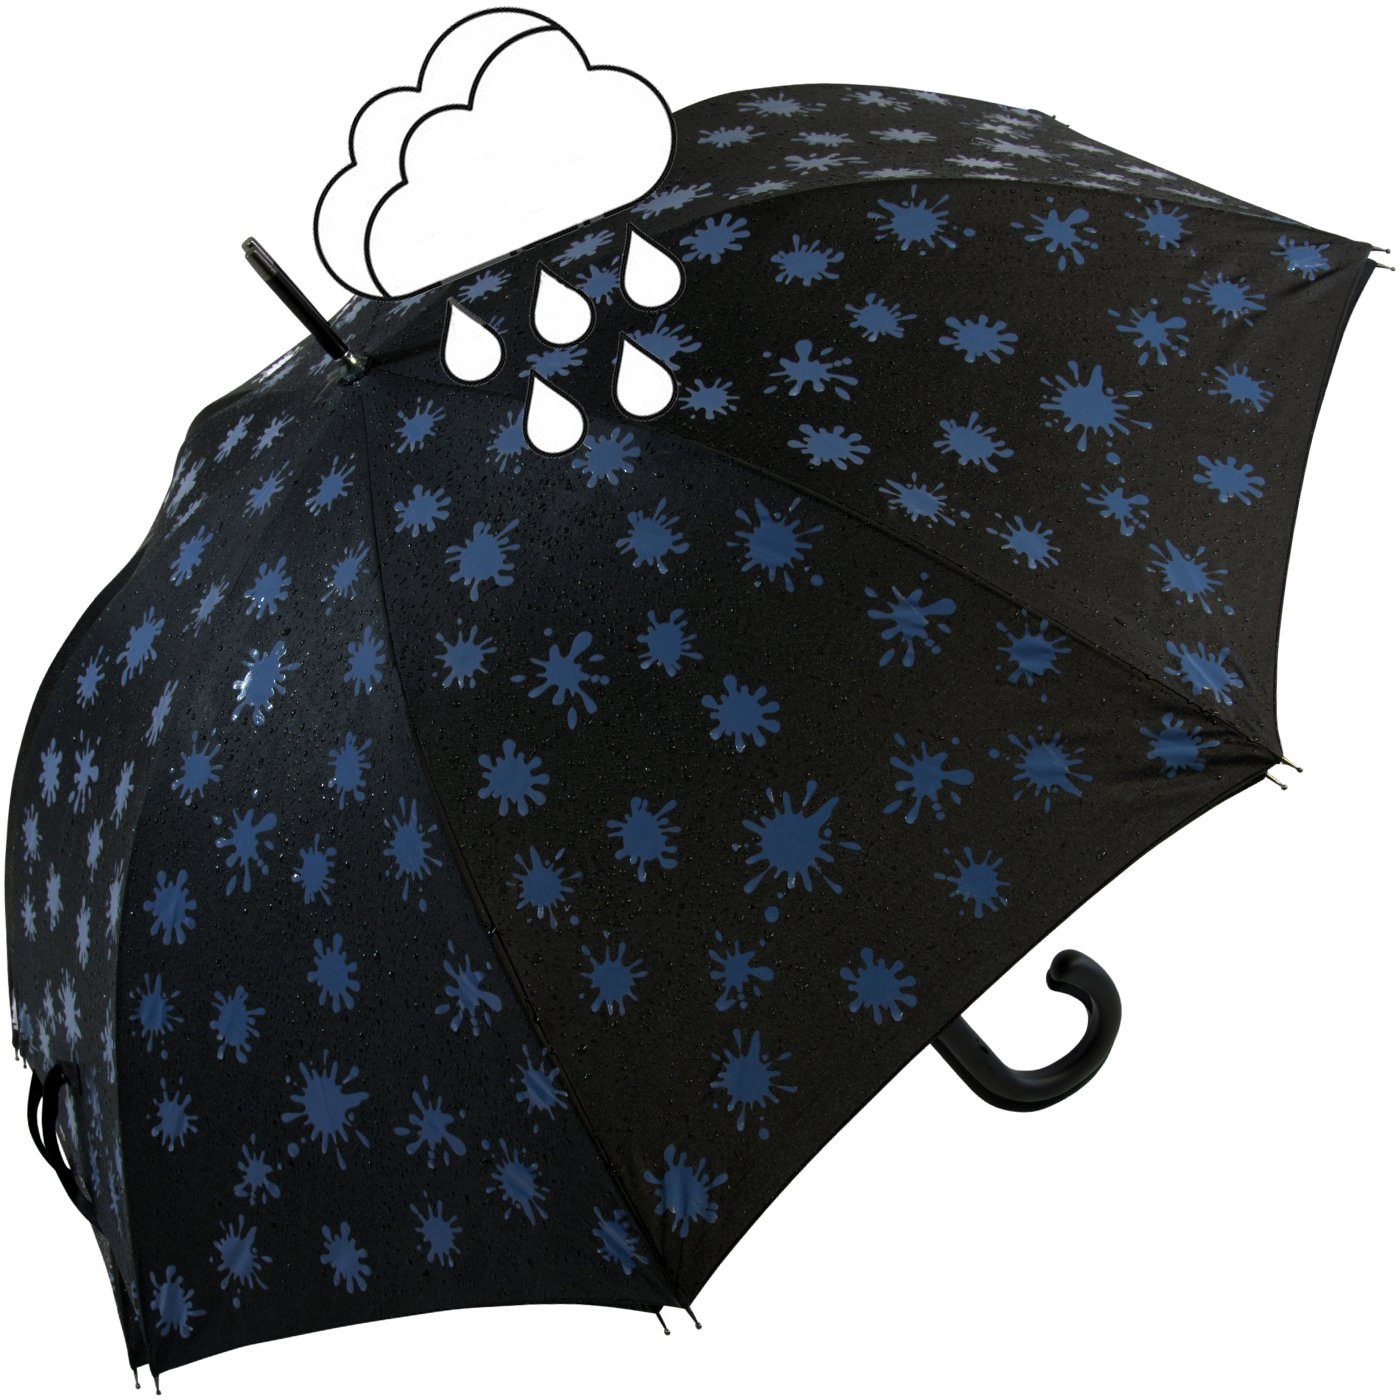 mit - Wet Langregenschirm iX-brella Farbkleckse iX-brella Print, schwarz-weiß-blau bei Damenschirm Farbänderung Nässe und Automatik blau